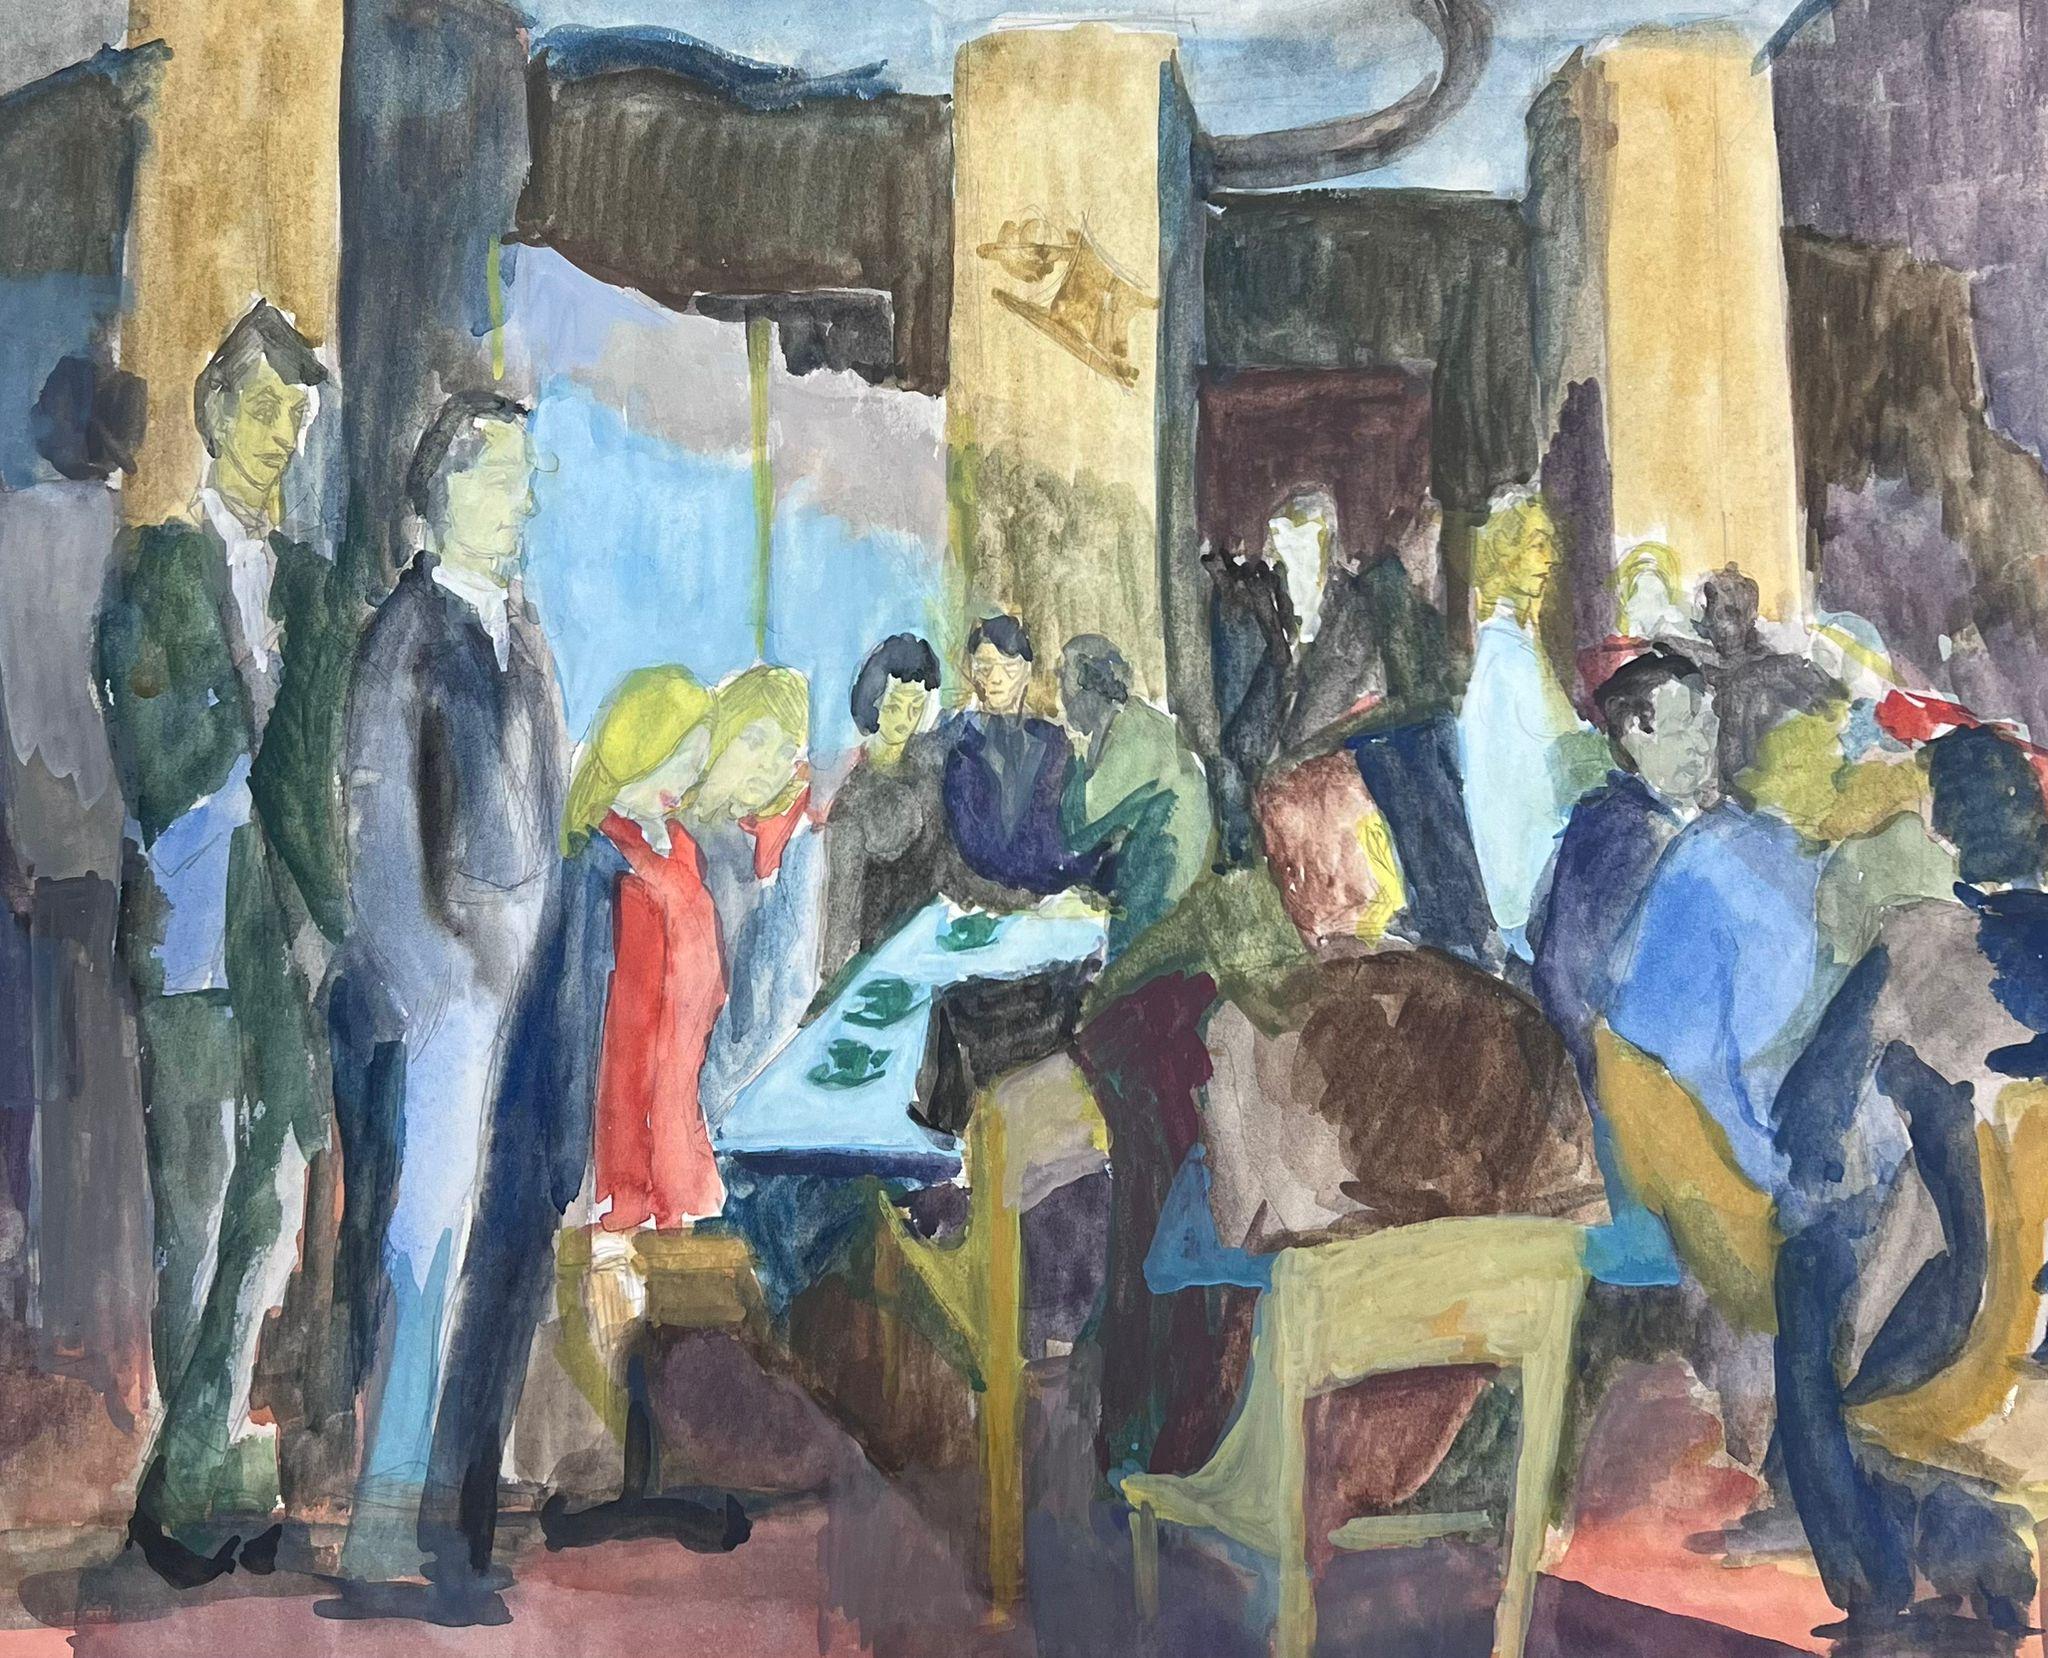 Französisches modernistisches Gemälde des 20. Jahrhunderts, Gemälde einer Crowded Cafe Bar-Szene mit Figuren – Art von Guy Nicod